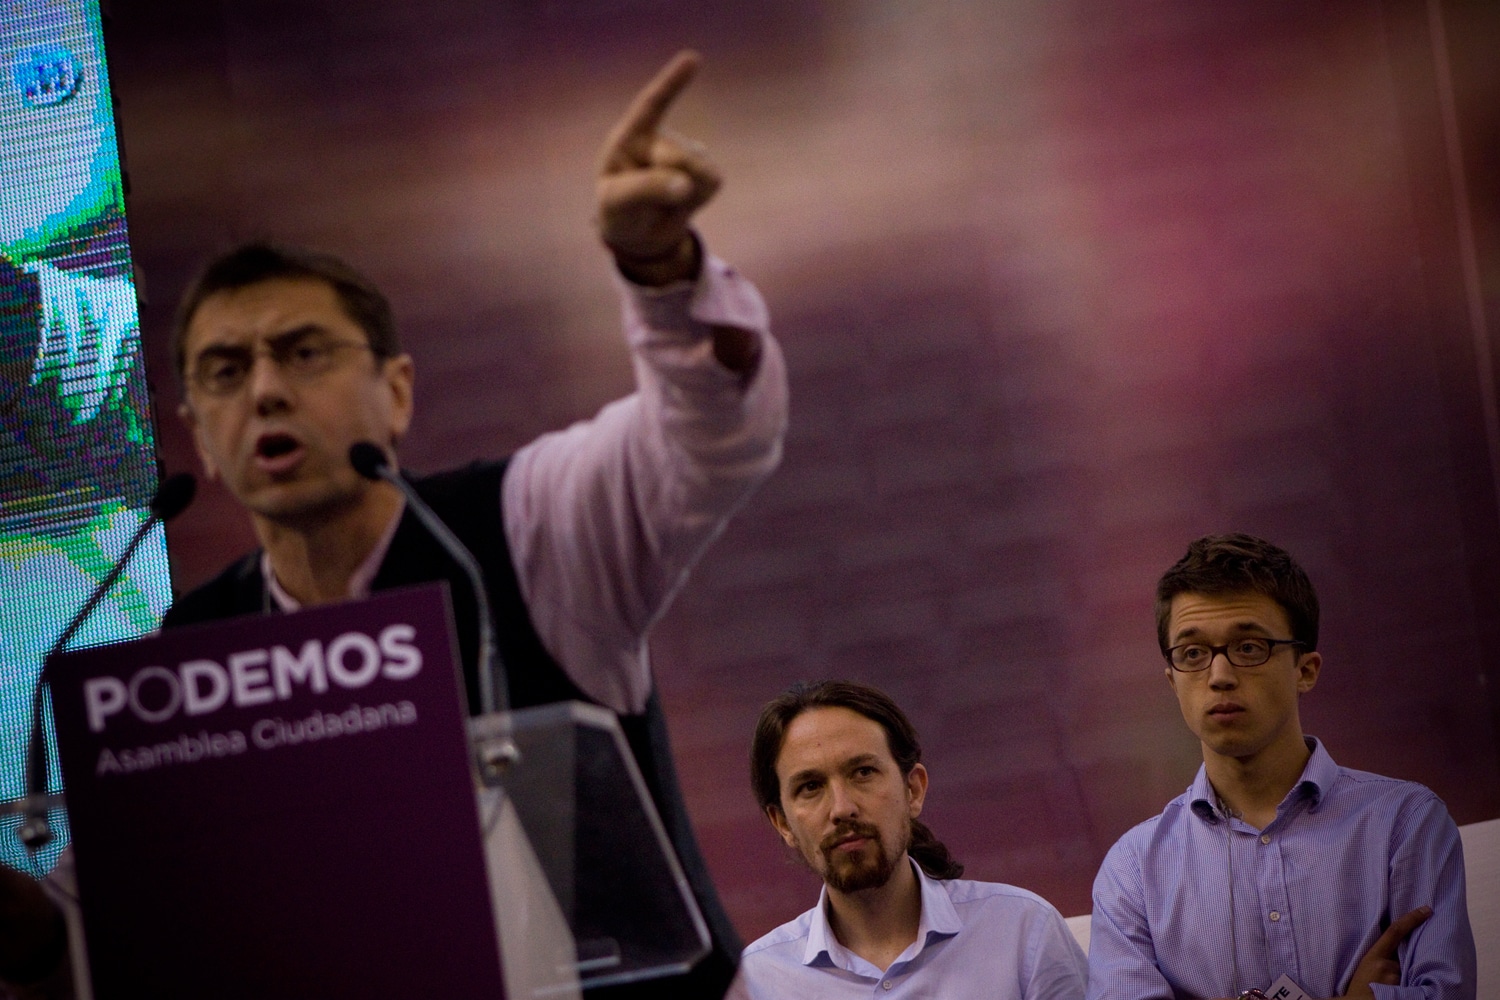 Nuevos testigos declararán en caso de corrupción que involucra a Podemos